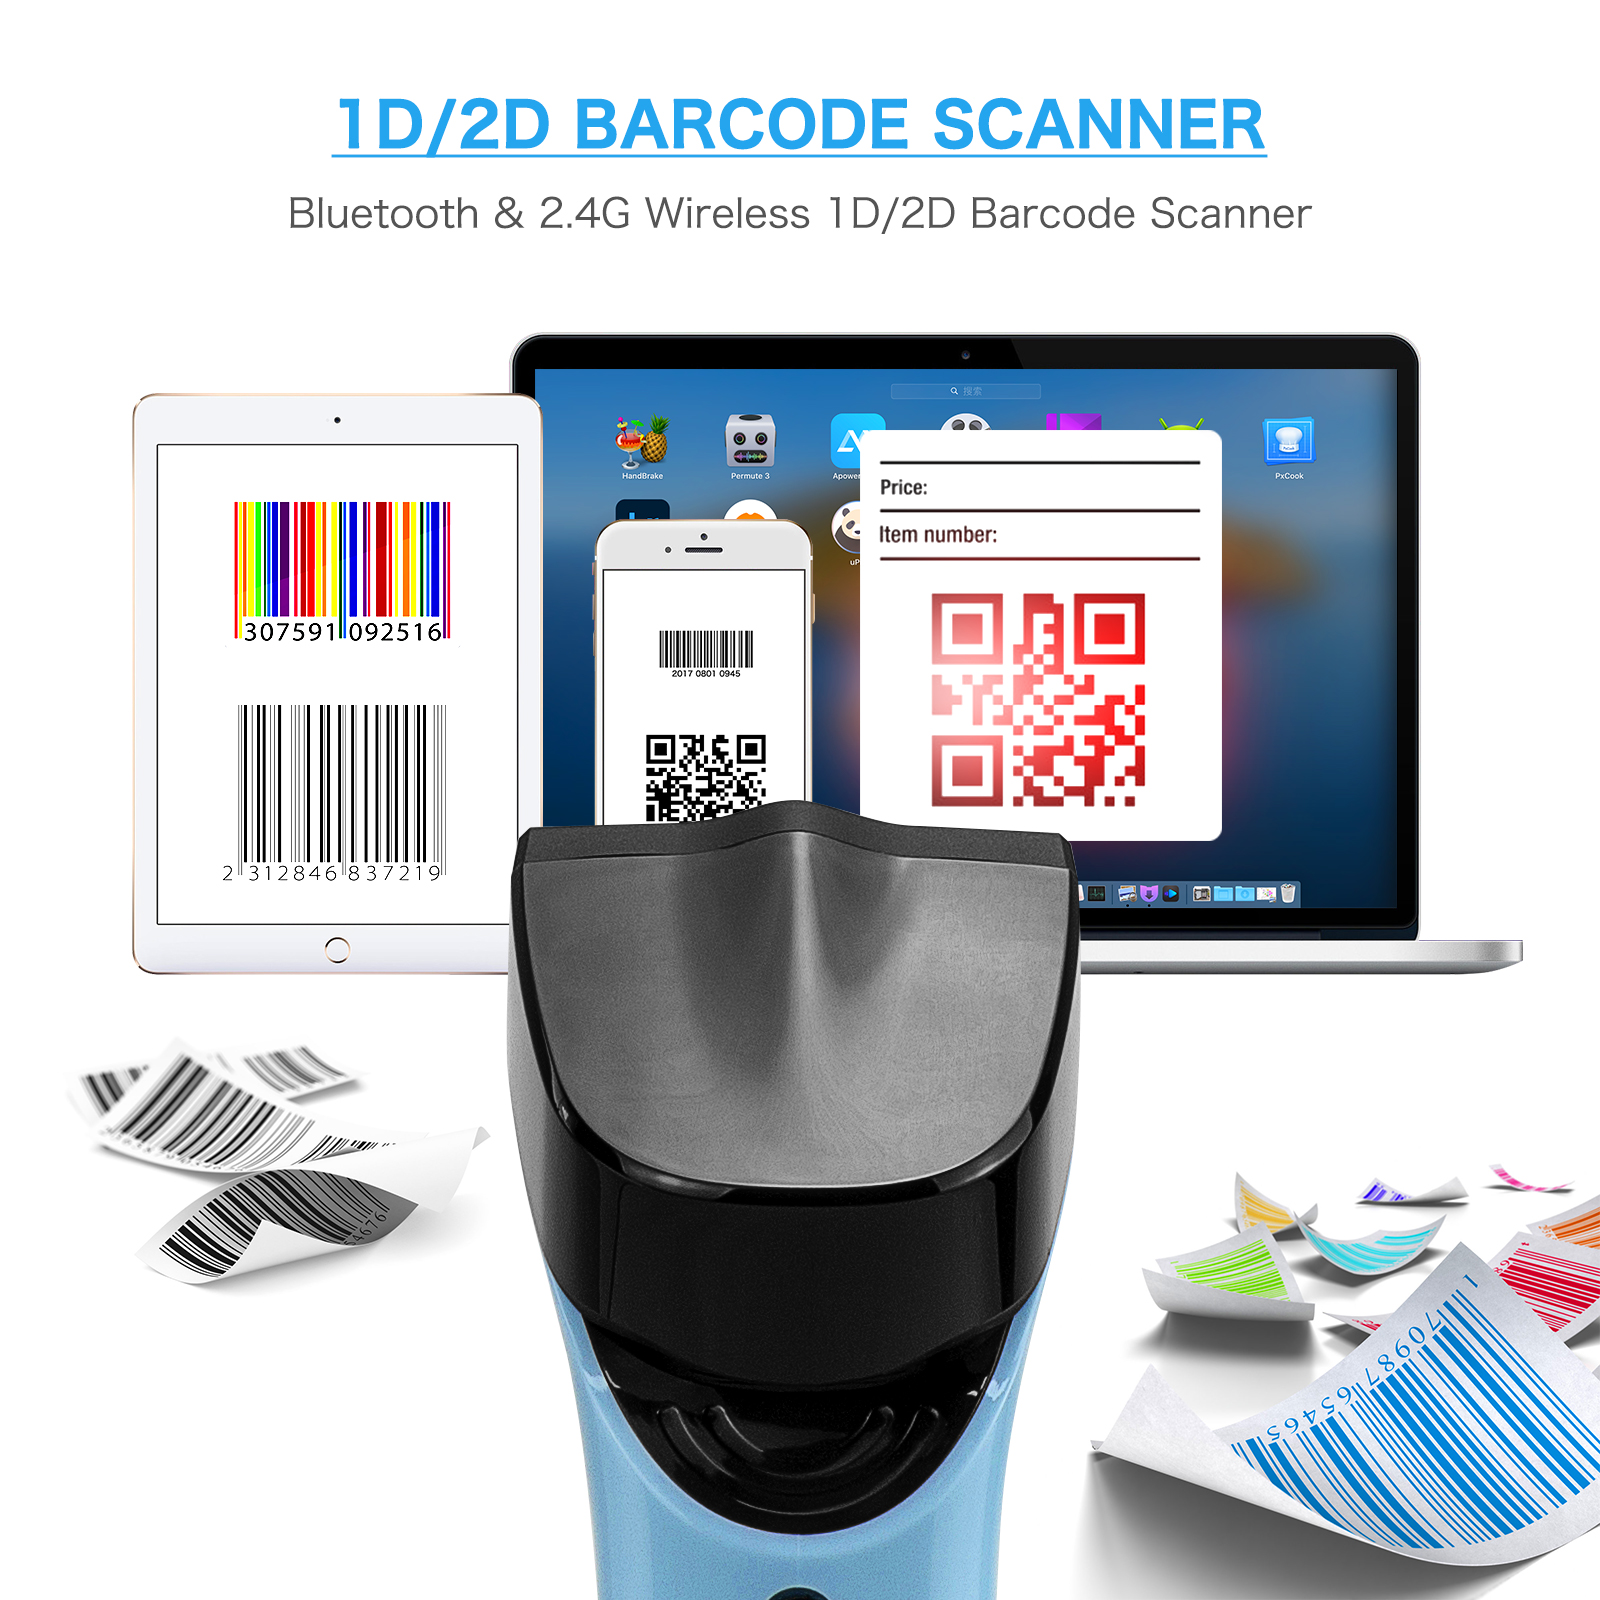 NETUM DS7500 2D Bluetooth Barcode Scanner, Hands Free Automatic Wireless QR Bar Code Reader